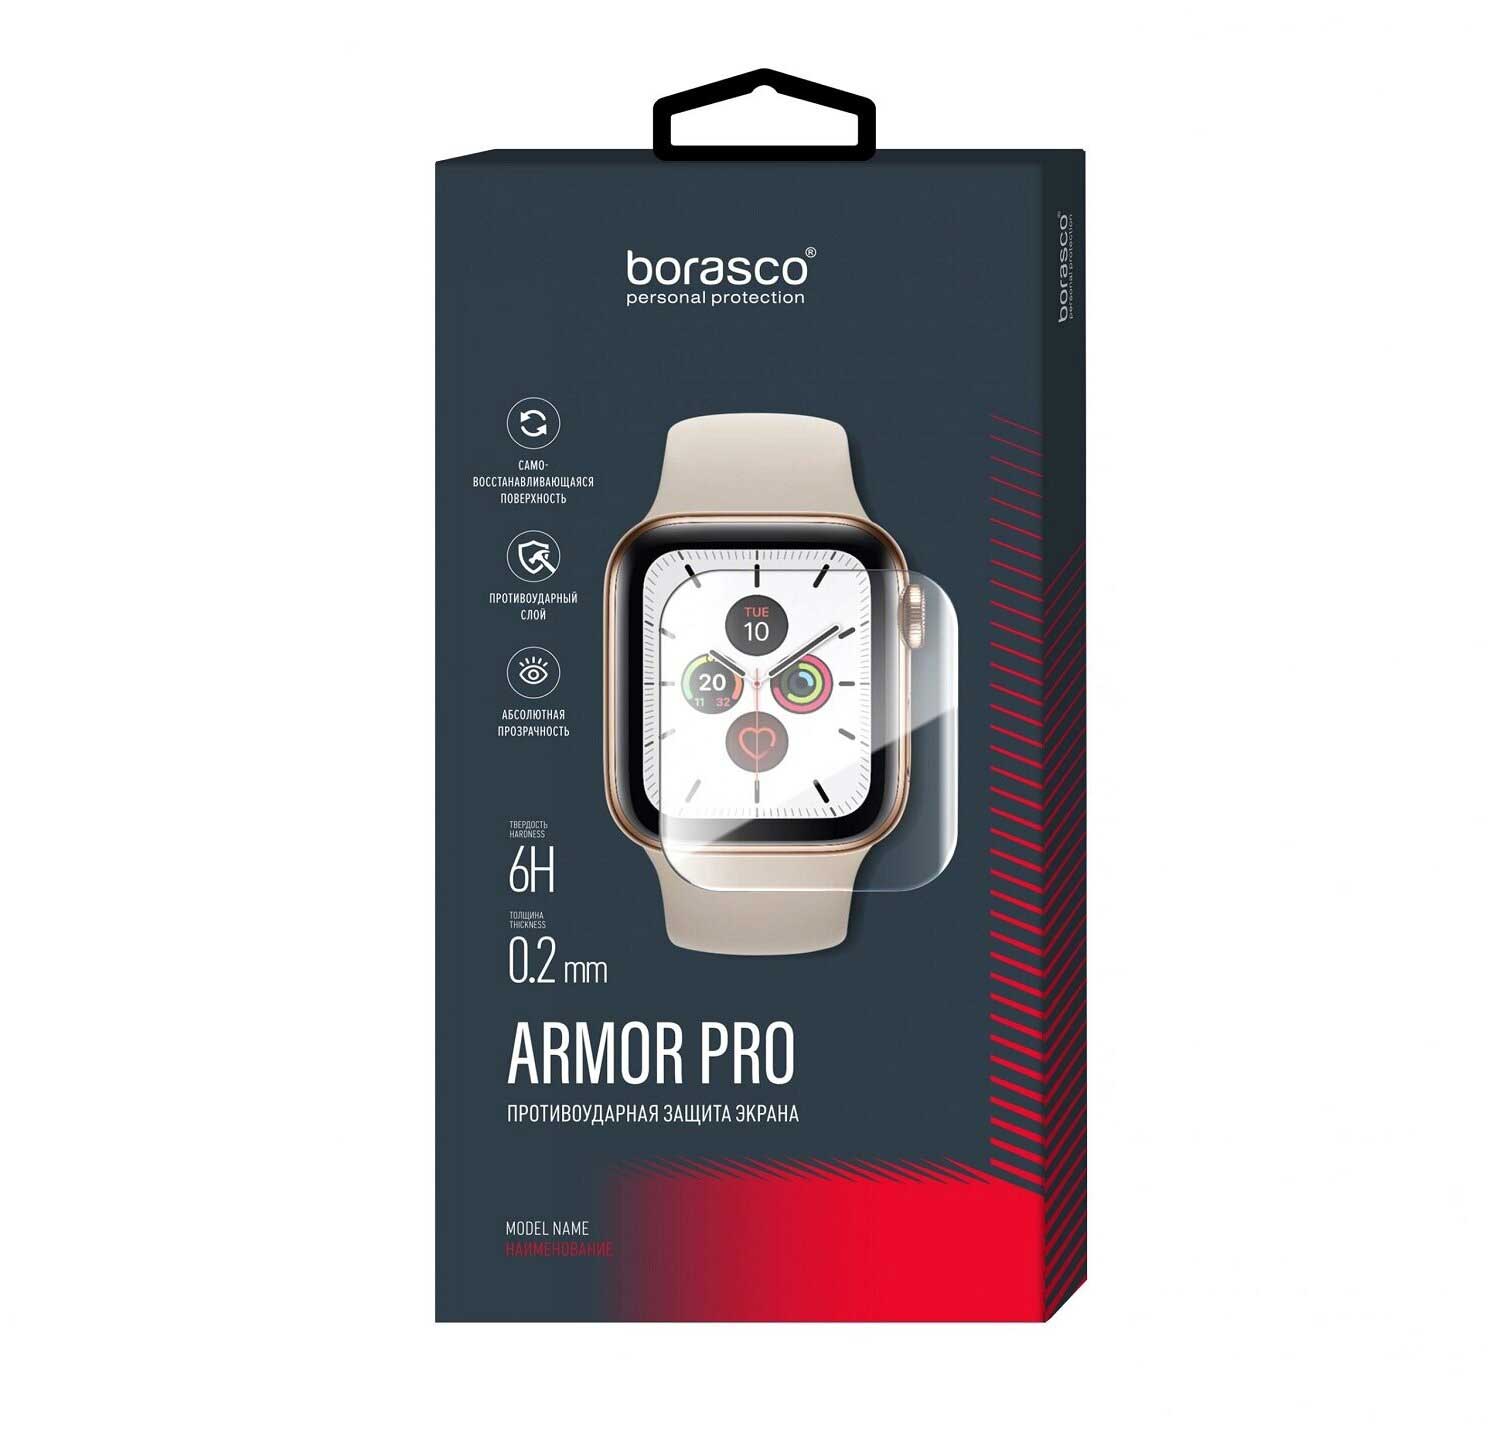 Защита экрана BoraSCO Armor Pro для Aimoto Pro Life защита экрана borasco armor pro для aimoto pro life